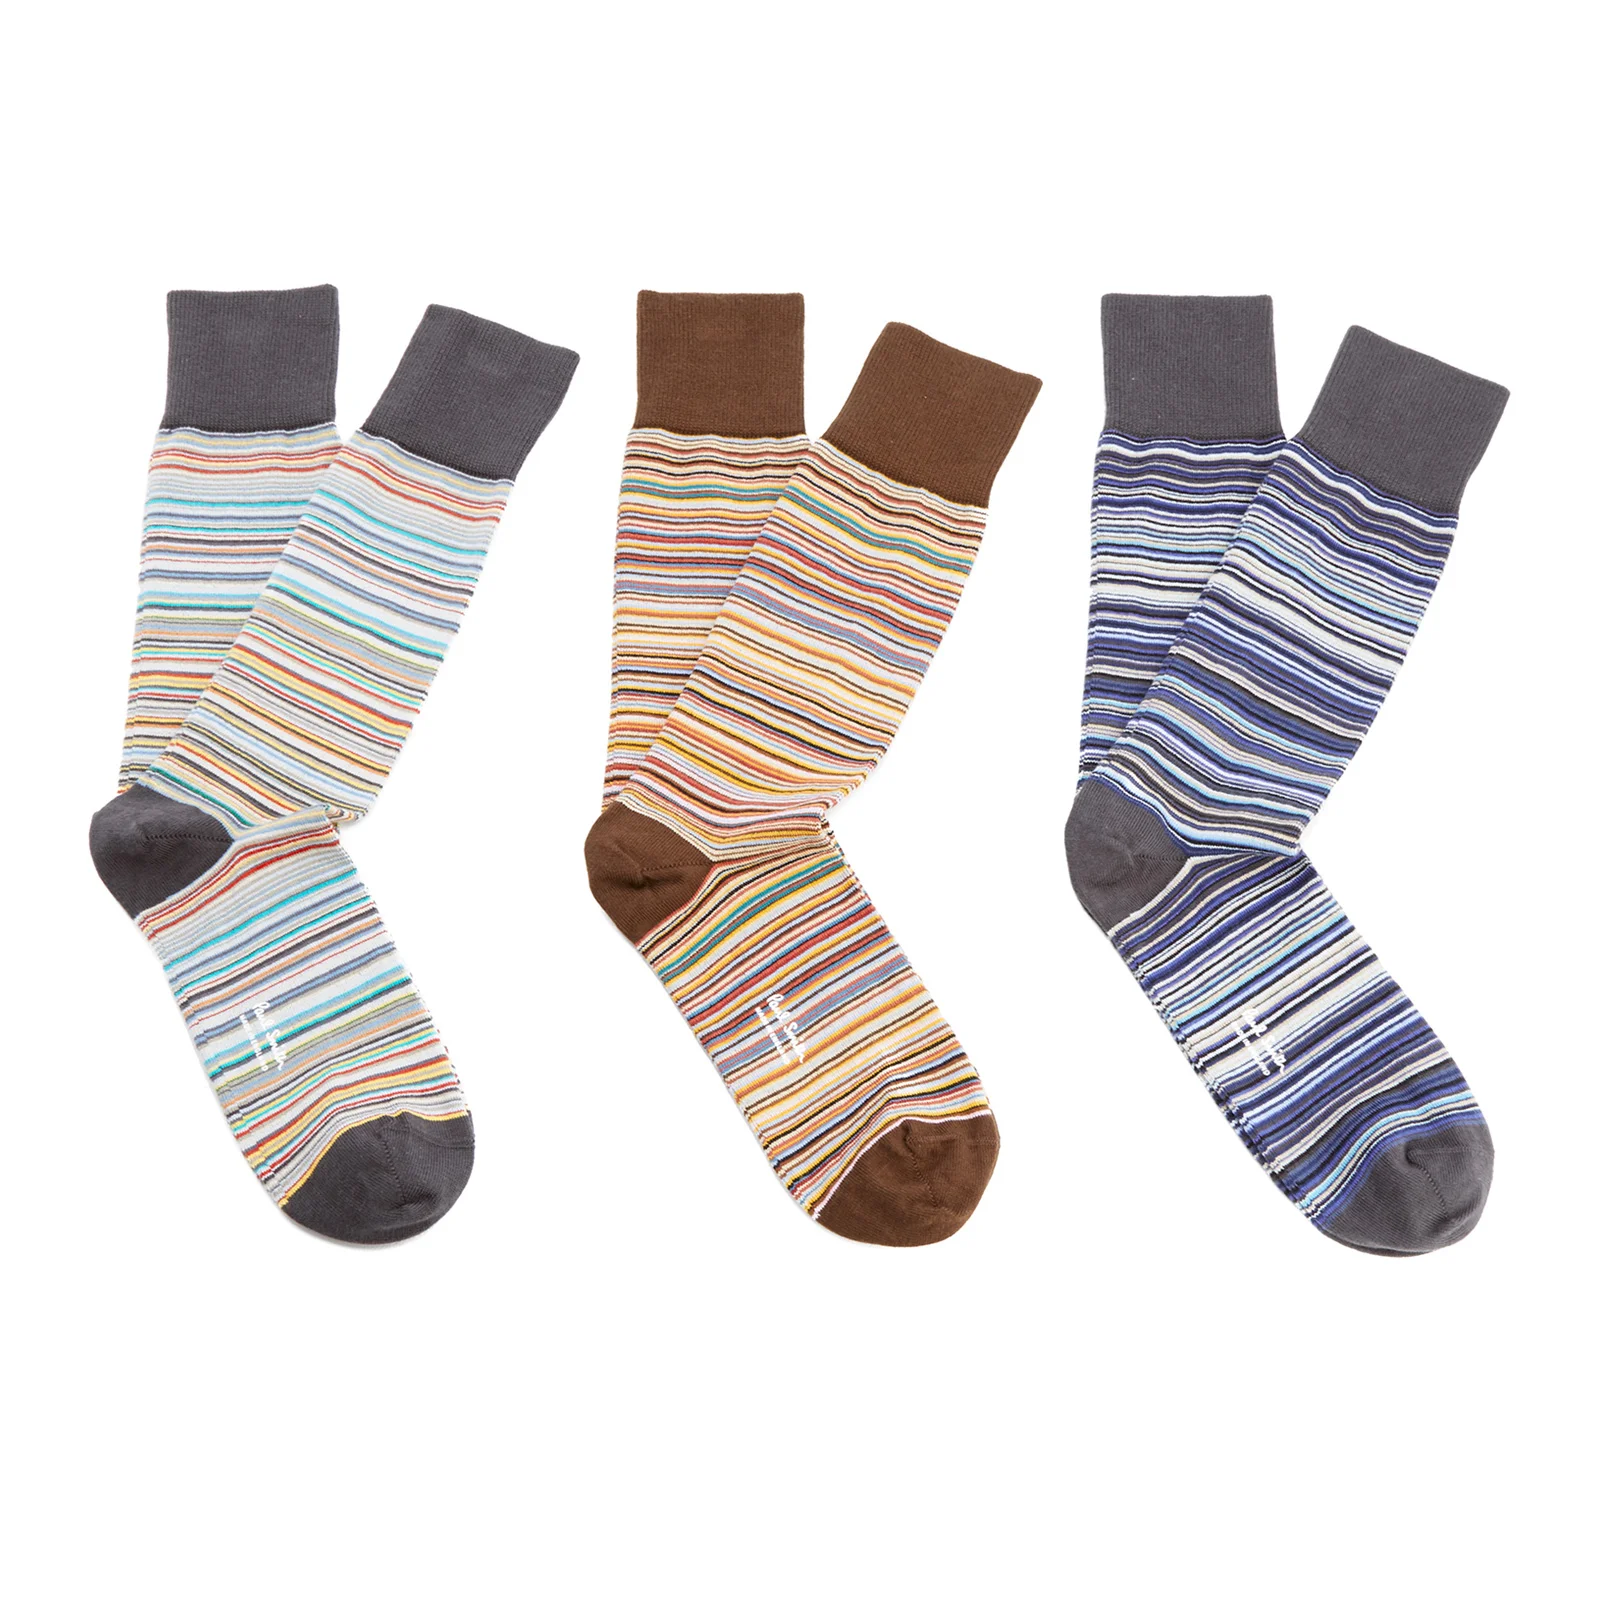 Paul Smith Men's 3 Pack Multi Stripe Socks - Multi Image 1